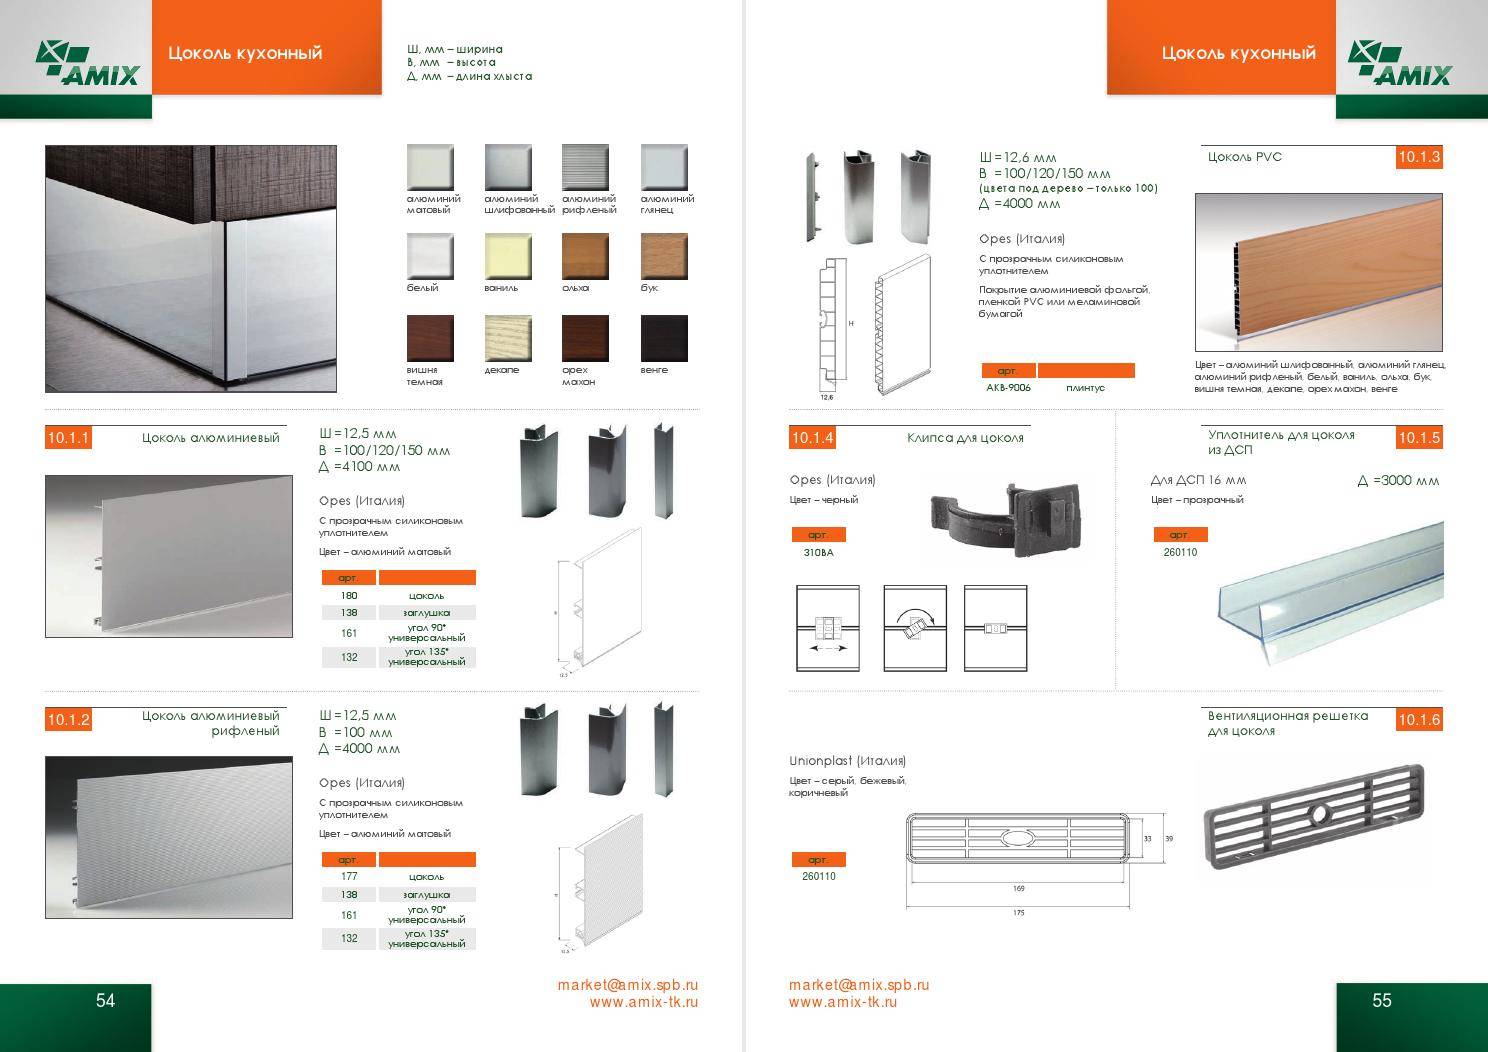 Стандарты кухонной мебели, высота, размеры и правила проектирования